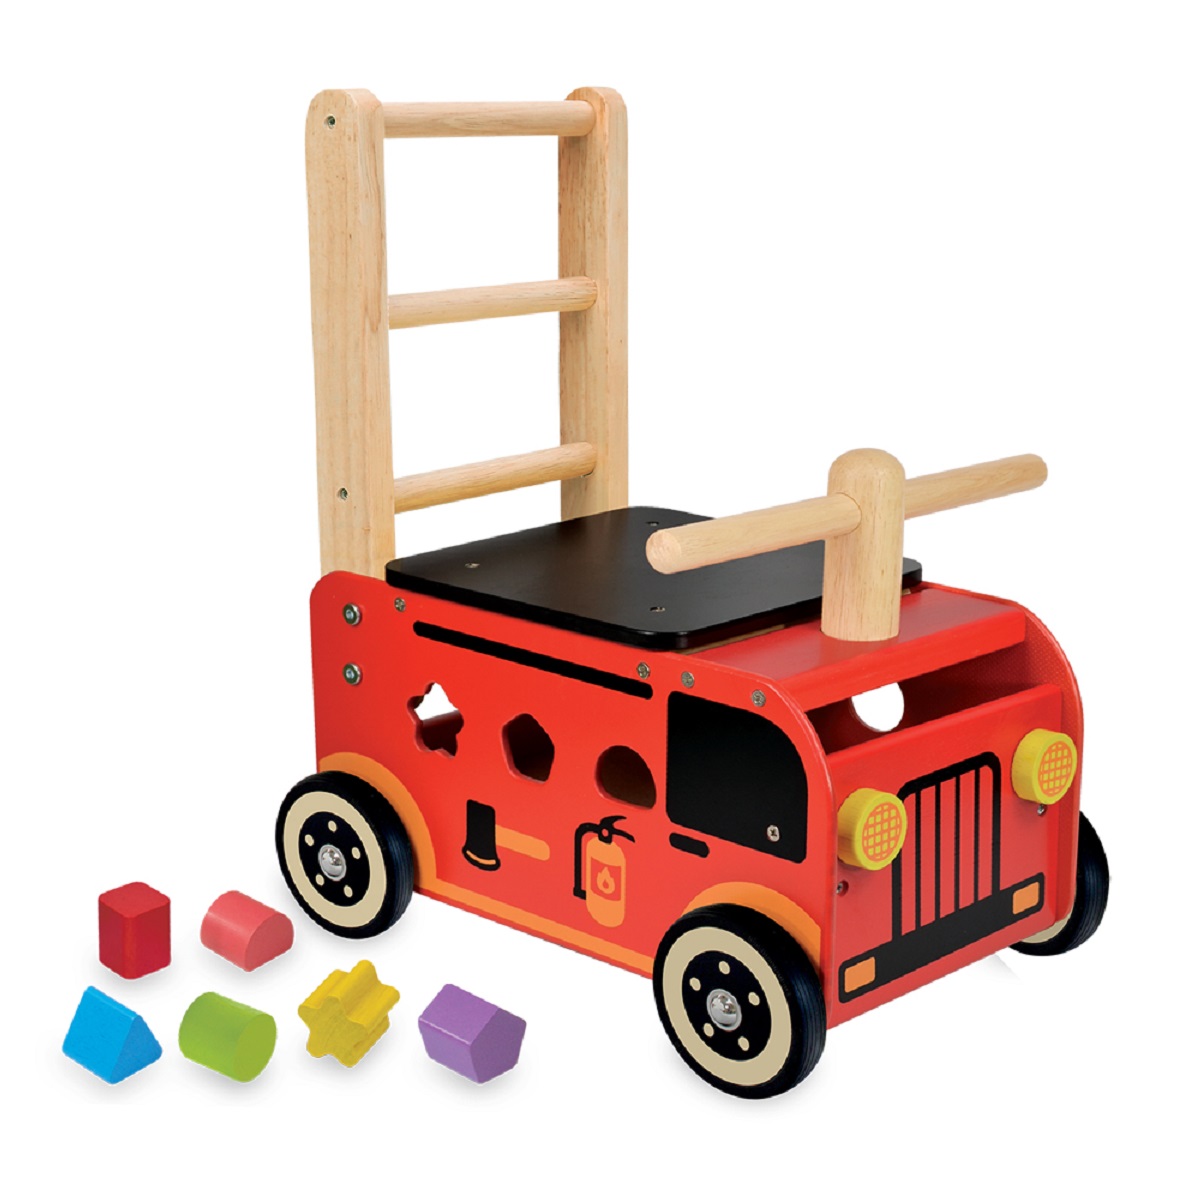 感謝価格】 ウォーカー ライド 消防車 手押し車 木製玩具 知育玩具 1歳から 乗用玩具 遊具 おもちゃ 木のおもちゃ 木製 出産祝い A10861  学研ステイフル